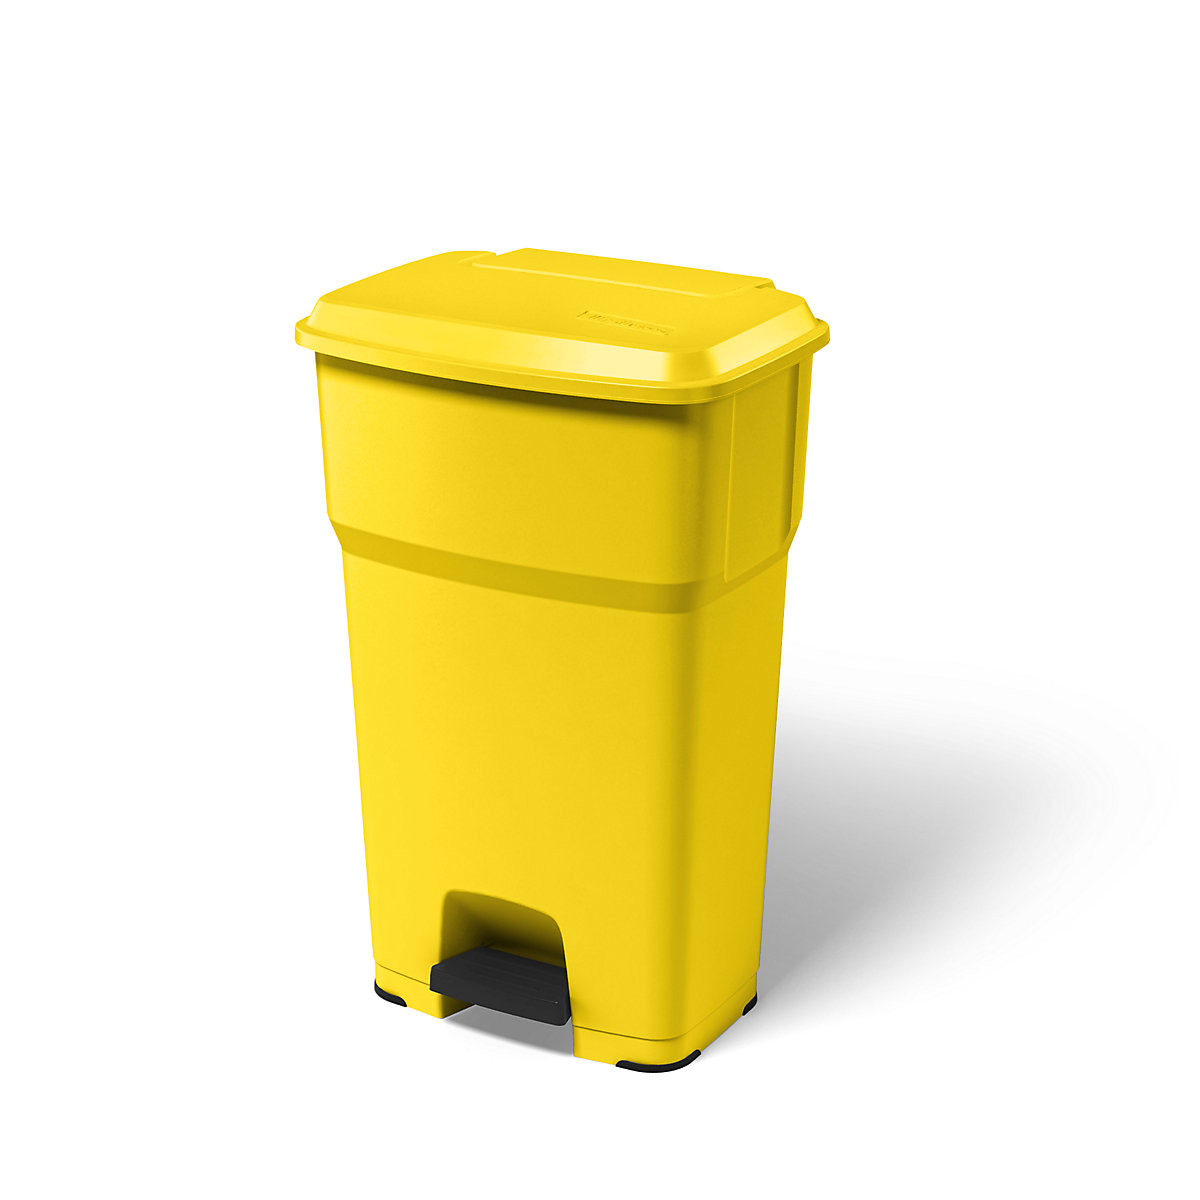 rothopro – Collecteur de déchets à pédale HERA, capacité 85 l, l x h x p 490 x 790 x 390 mm, jaune